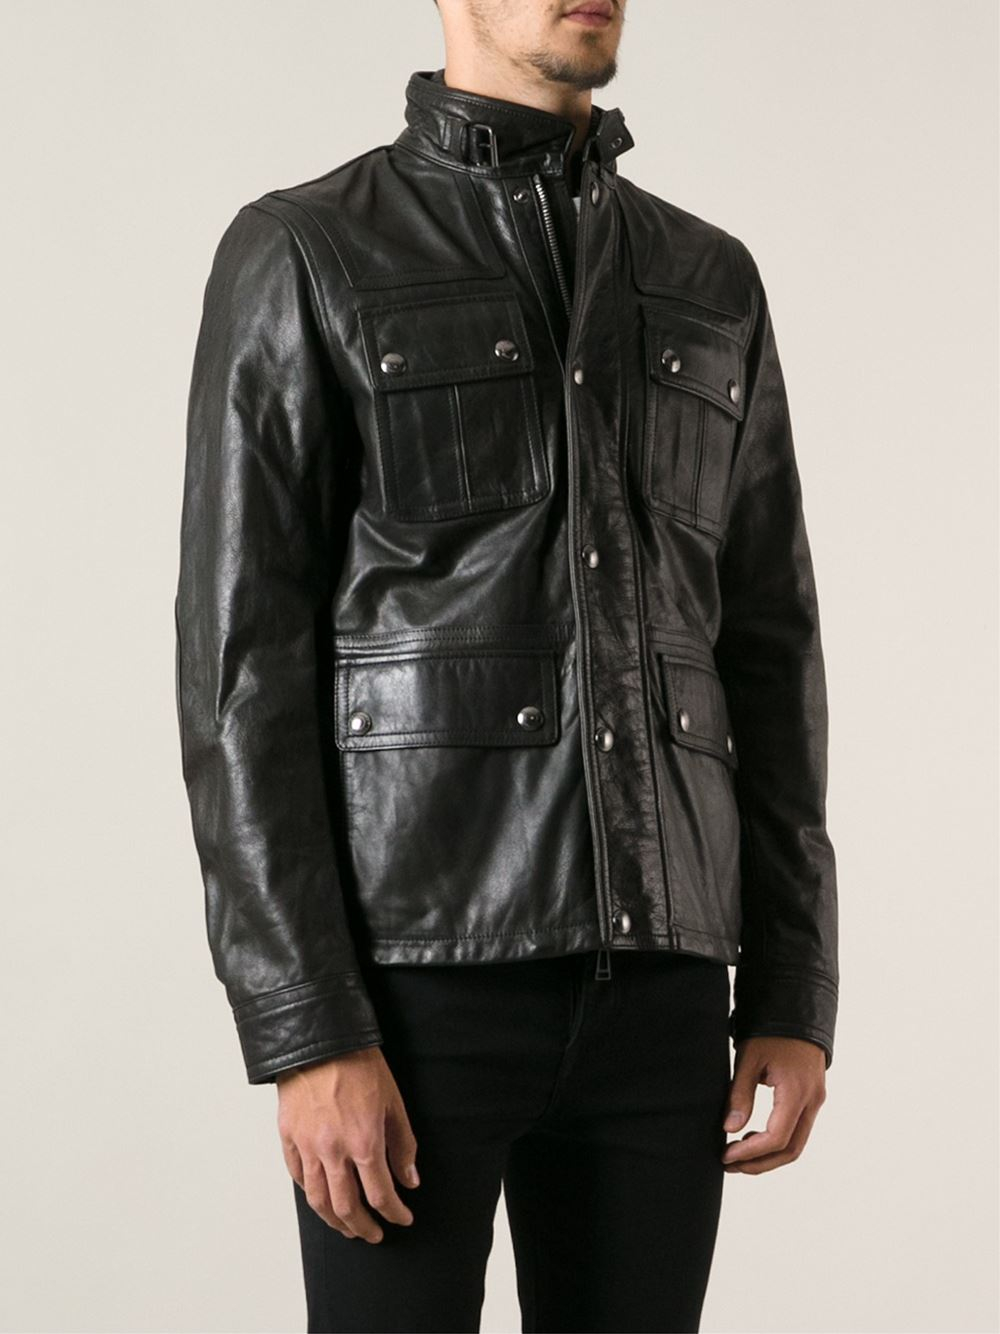 Belstaff 'Maple' Biker Jacket in Black for Men - Lyst